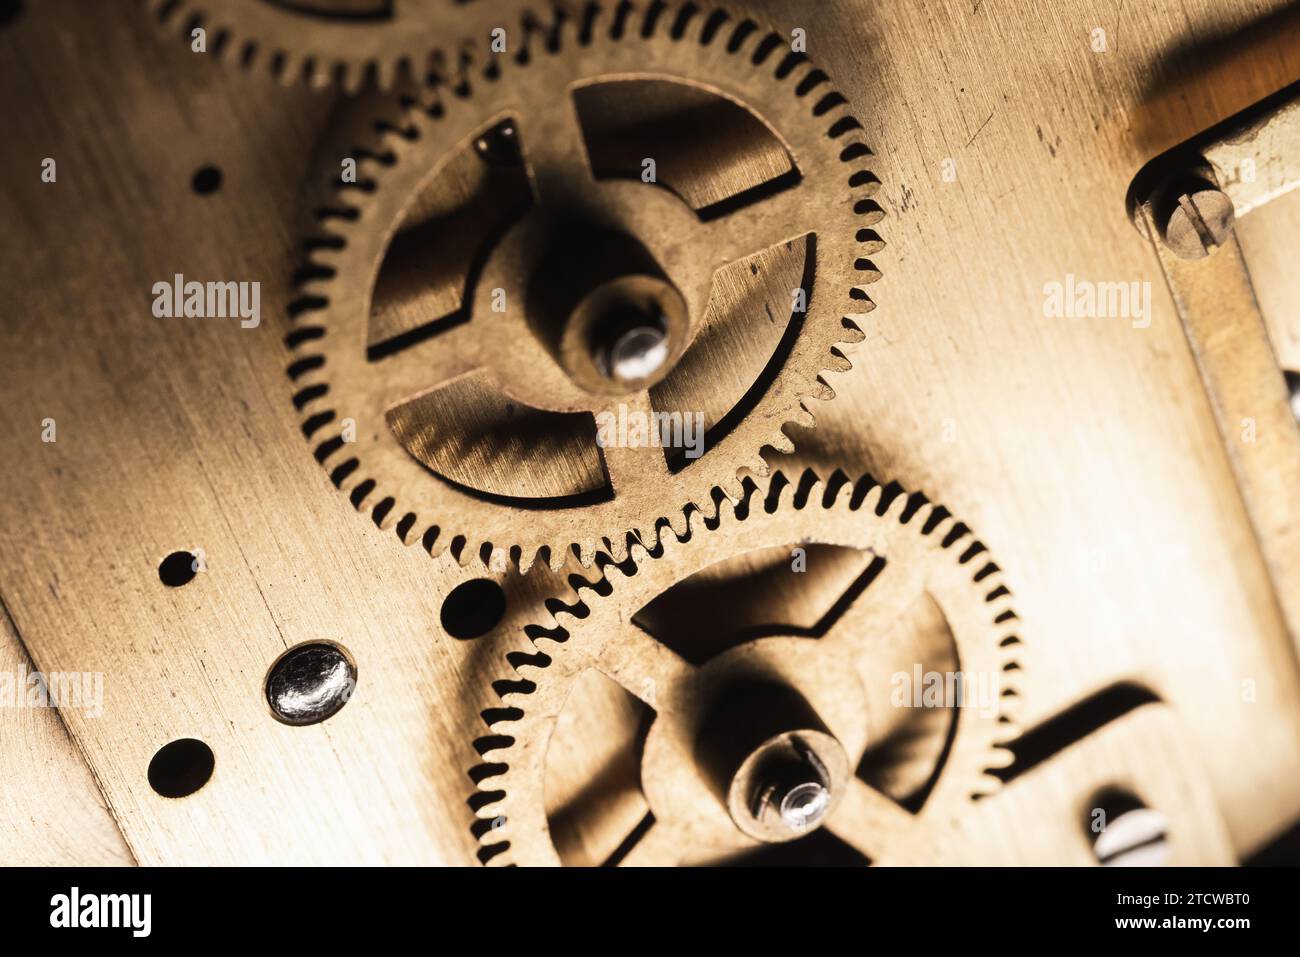 Roues dentées d'une horloge de table vintage, photo rapprochée avec mise au point sélective Banque D'Images